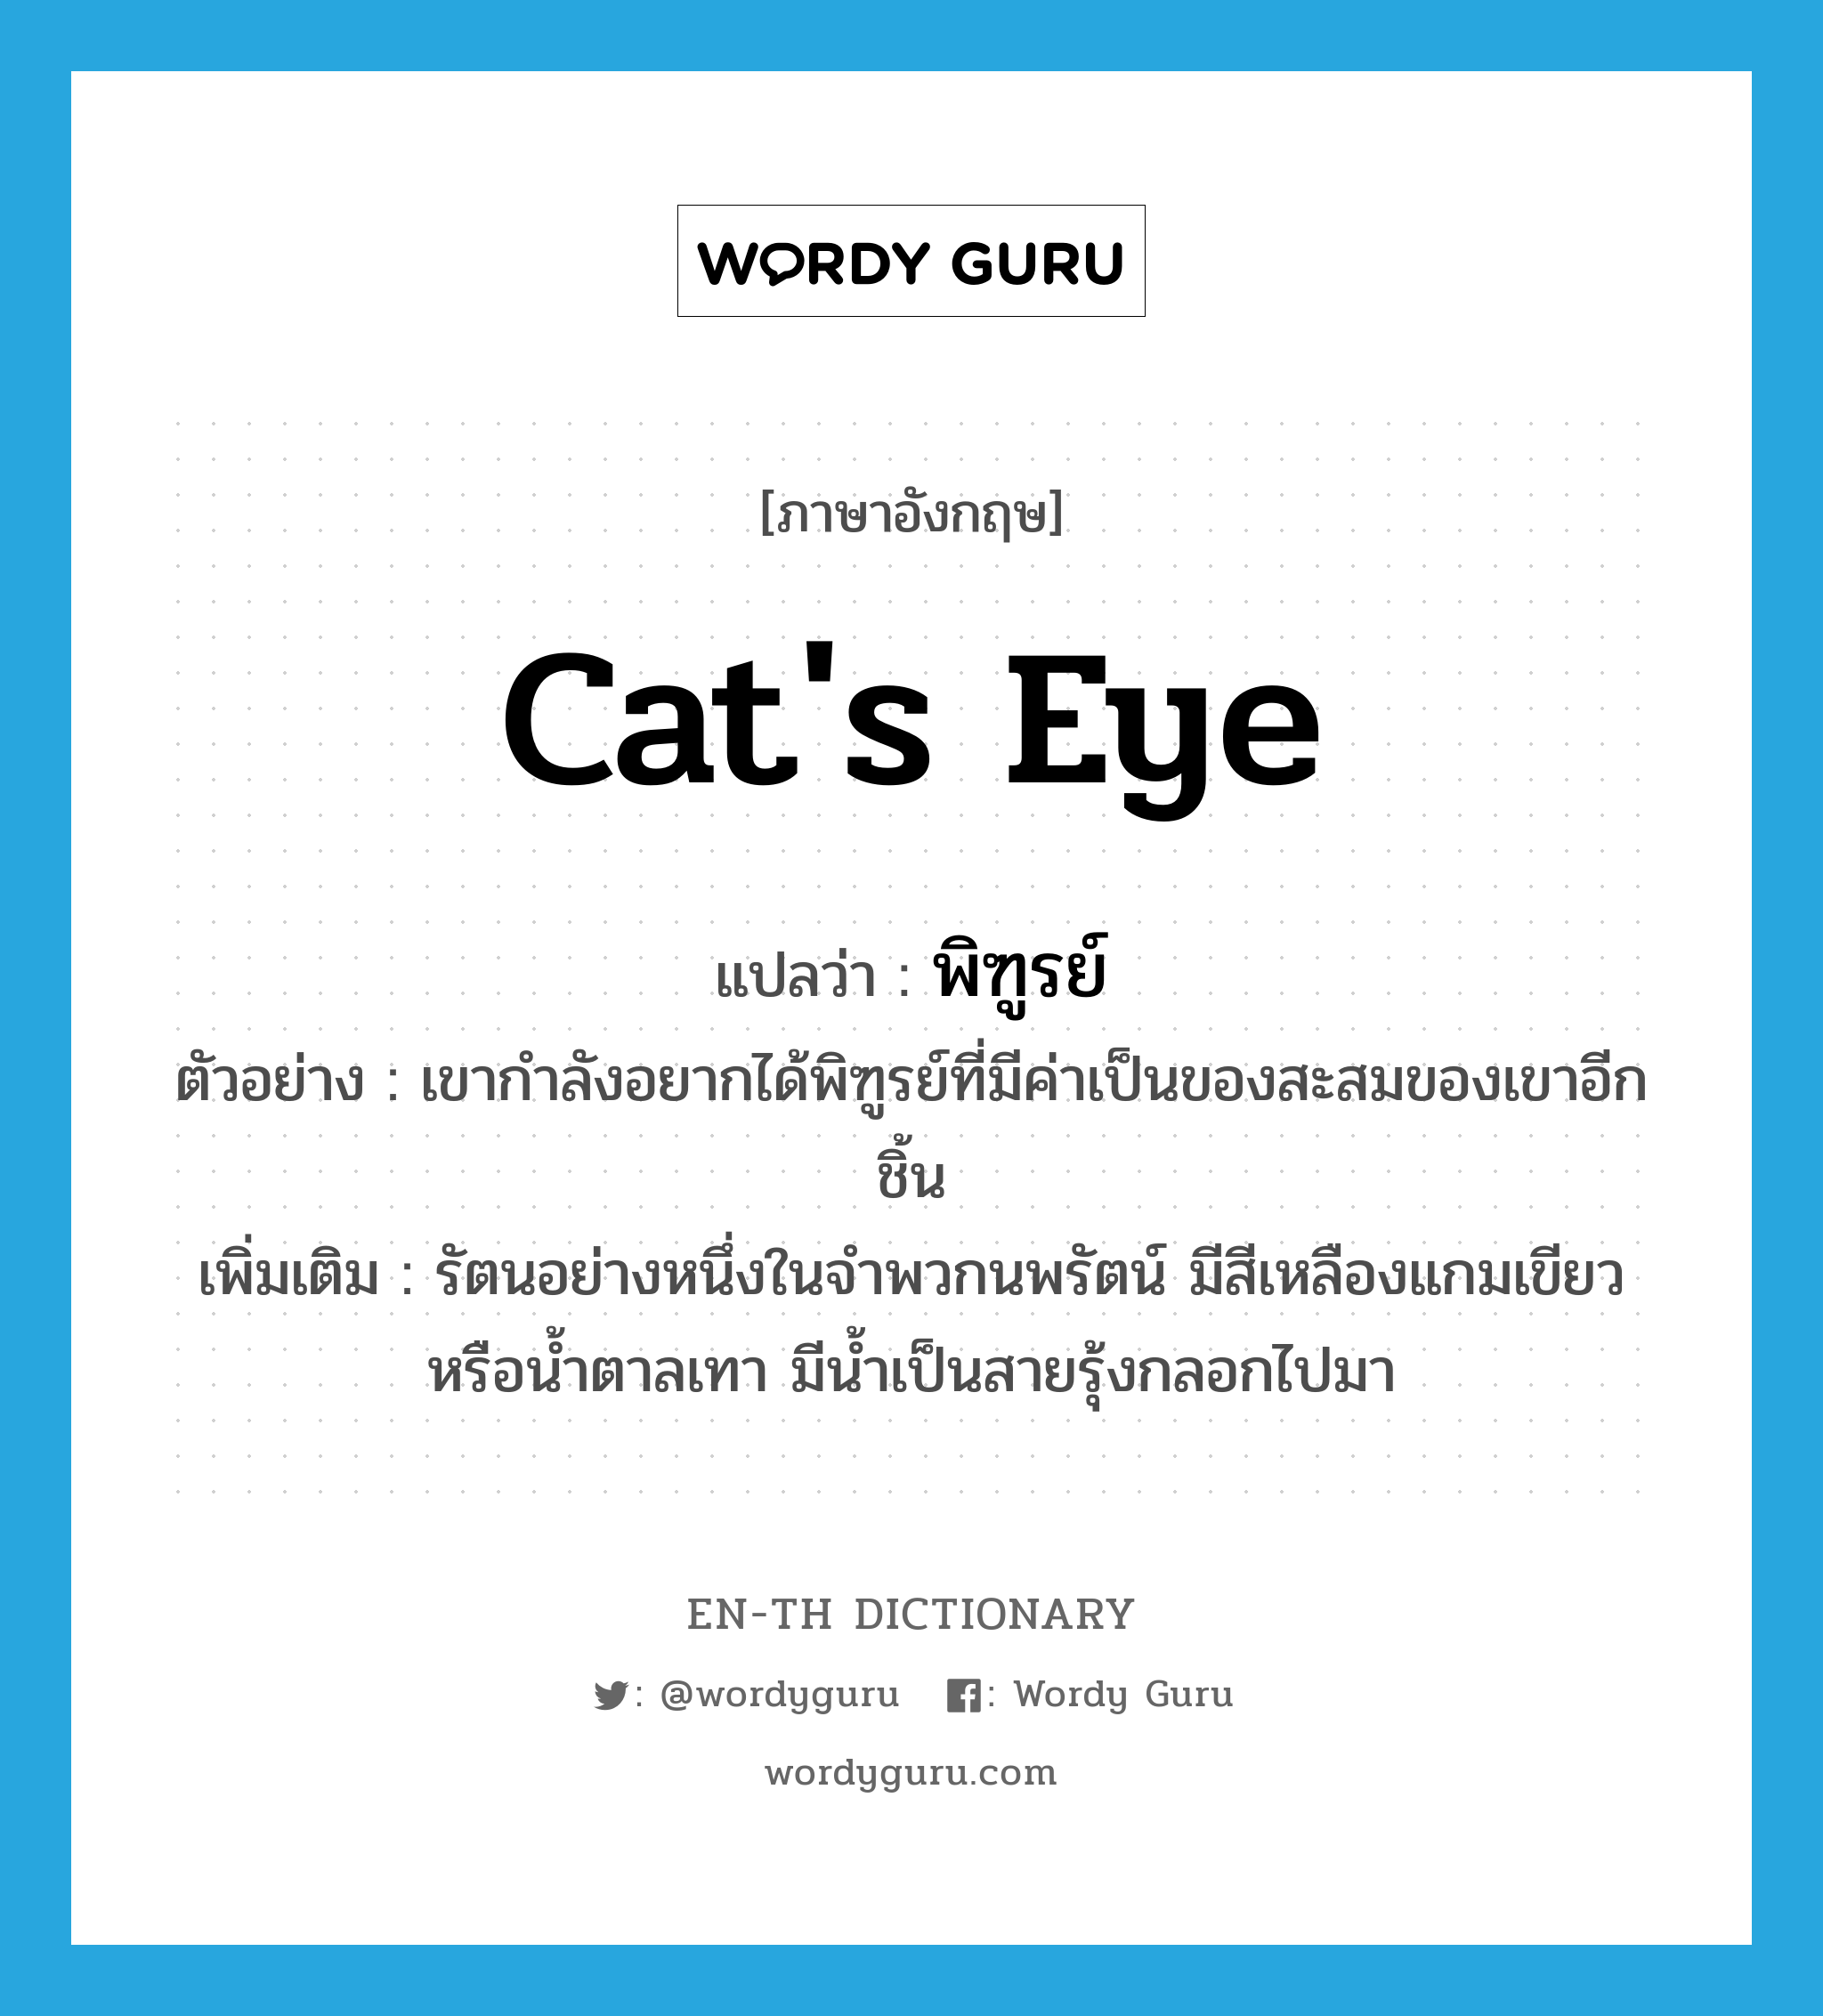 พิฑูรย์ ภาษาอังกฤษ?, คำศัพท์ภาษาอังกฤษ พิฑูรย์ แปลว่า cat's eye ประเภท N ตัวอย่าง เขากำลังอยากได้พิฑูรย์ที่มีค่าเป็นของสะสมของเขาอีกชิ้น เพิ่มเติม รัตนอย่างหนึ่งในจำพวกนพรัตน์ มีสีเหลืองแกมเขียวหรือน้ำตาลเทา มีน้ำเป็นสายรุ้งกลอกไปมา หมวด N